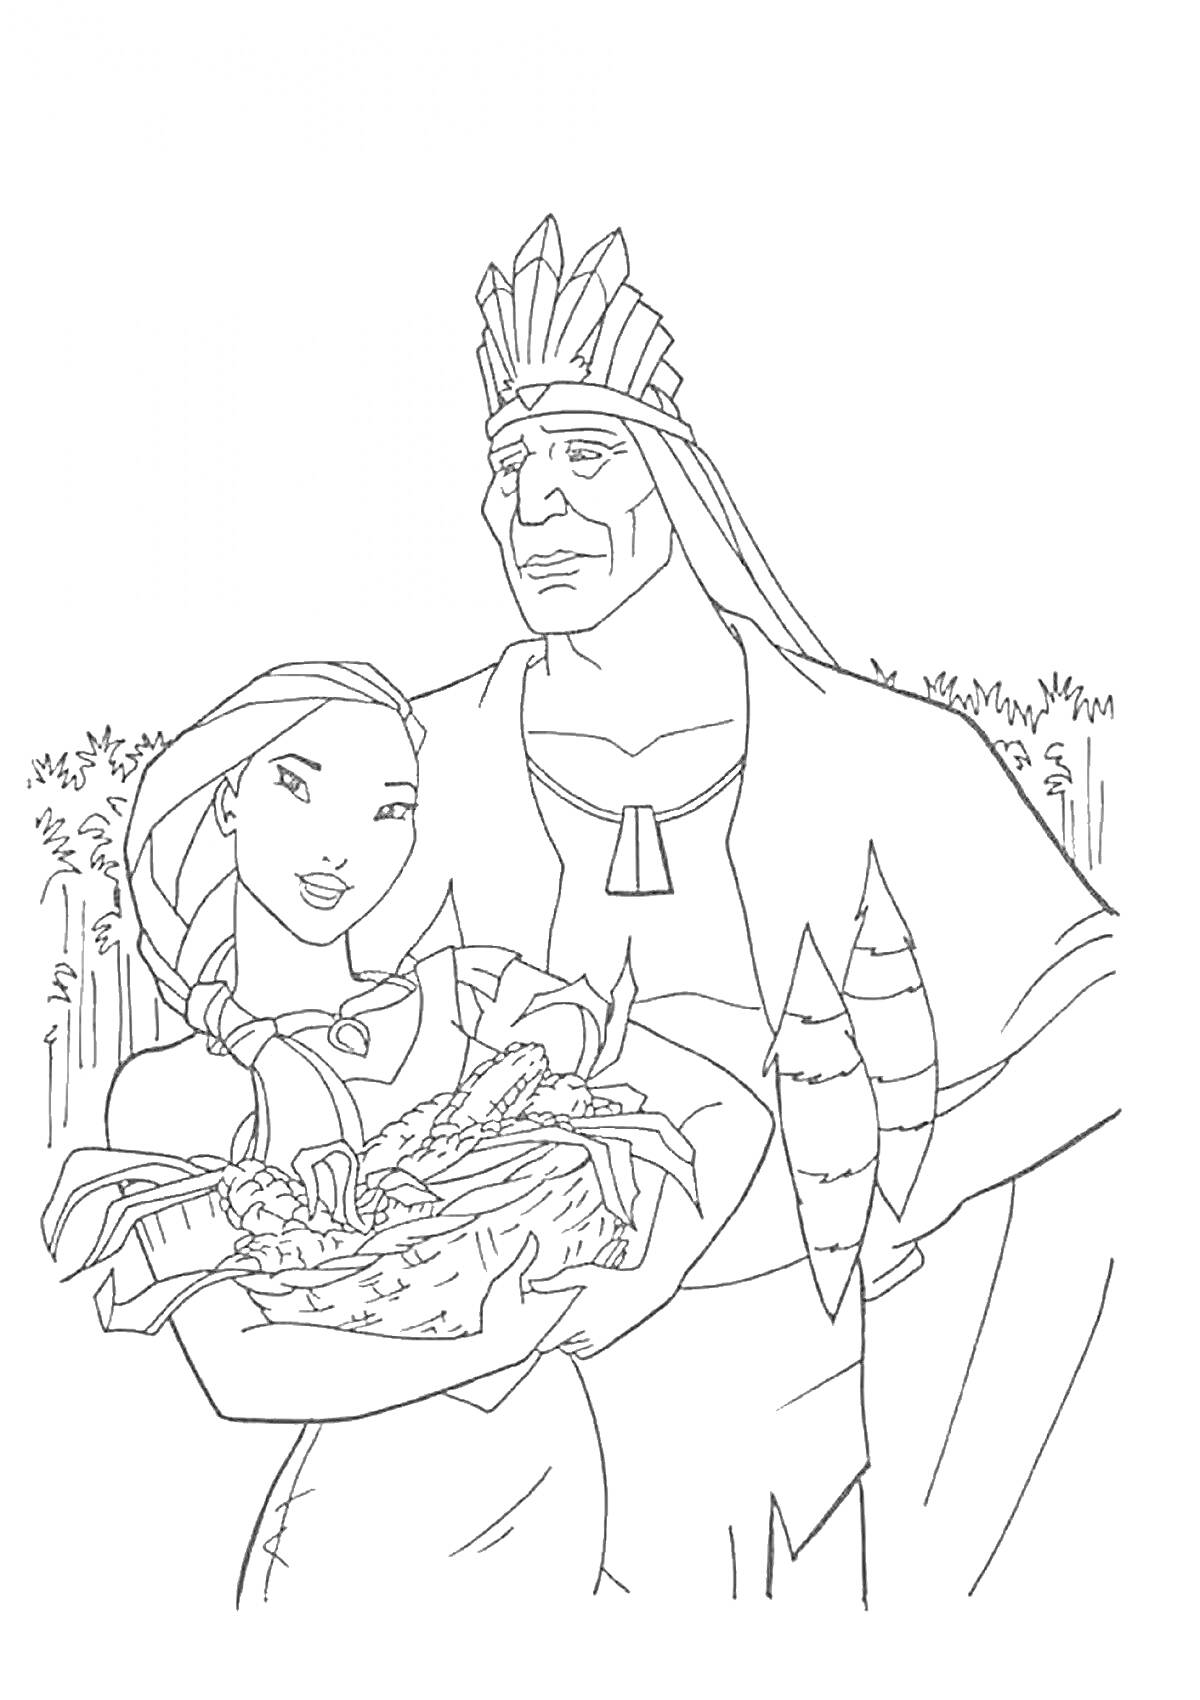 Раскраска Девушка с длинными волосами в платье держит корзину с овощами, мужчина в головном уборе стоит рядом